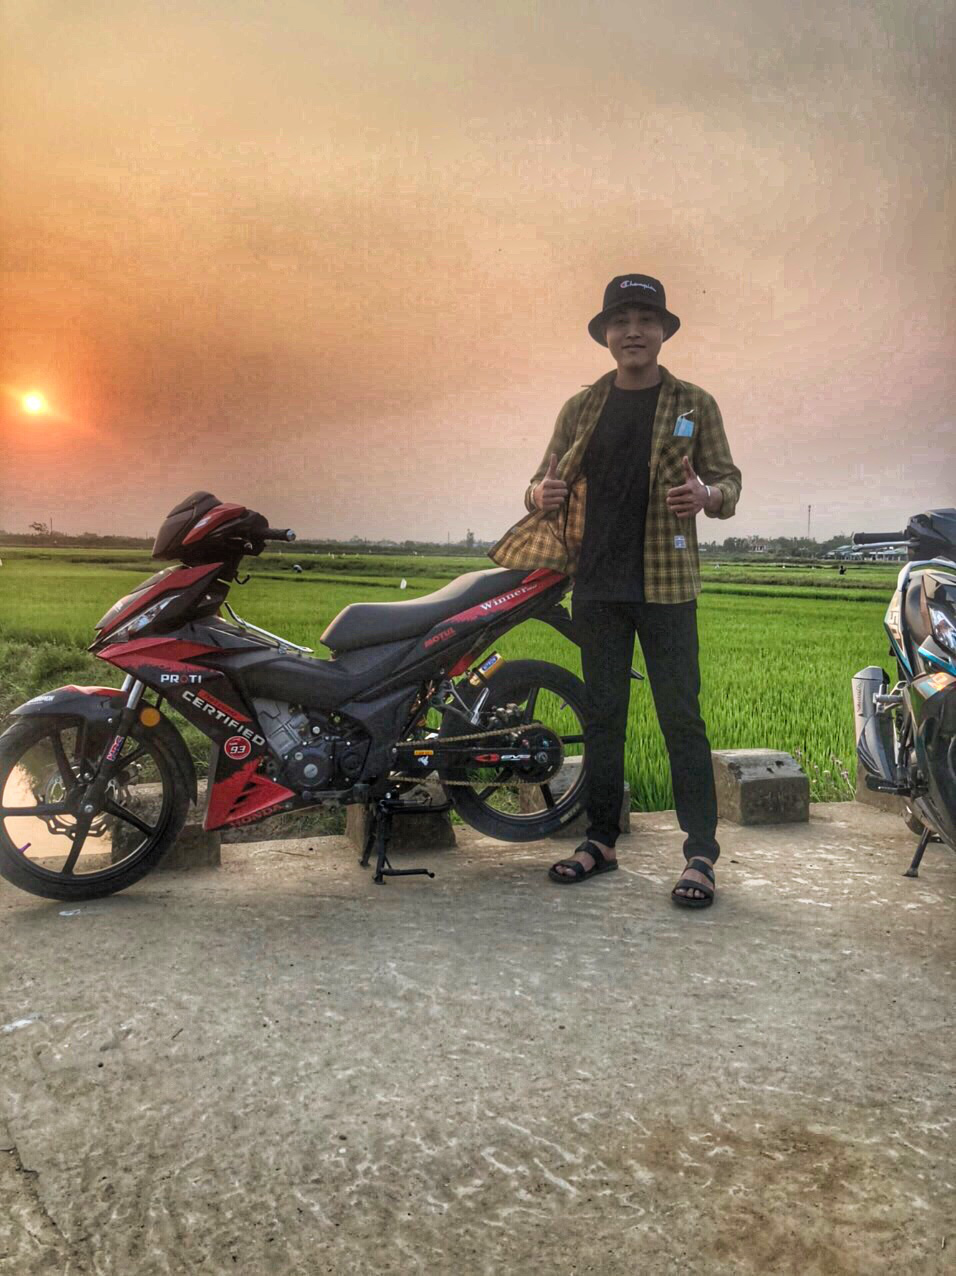 Biker Việt: Các biker Việt là những người đam mê tốc độ và có nhiều kinh nghiệm trong lái xe. Họ đến từ khắp nơi trên đất nước Việt Nam và là những người dám đối mặt với những thử thách trên đường. Hãy cùng chiêm ngưỡng cuộc sống đầy màu sắc và cảm xúc của các biker Việt.